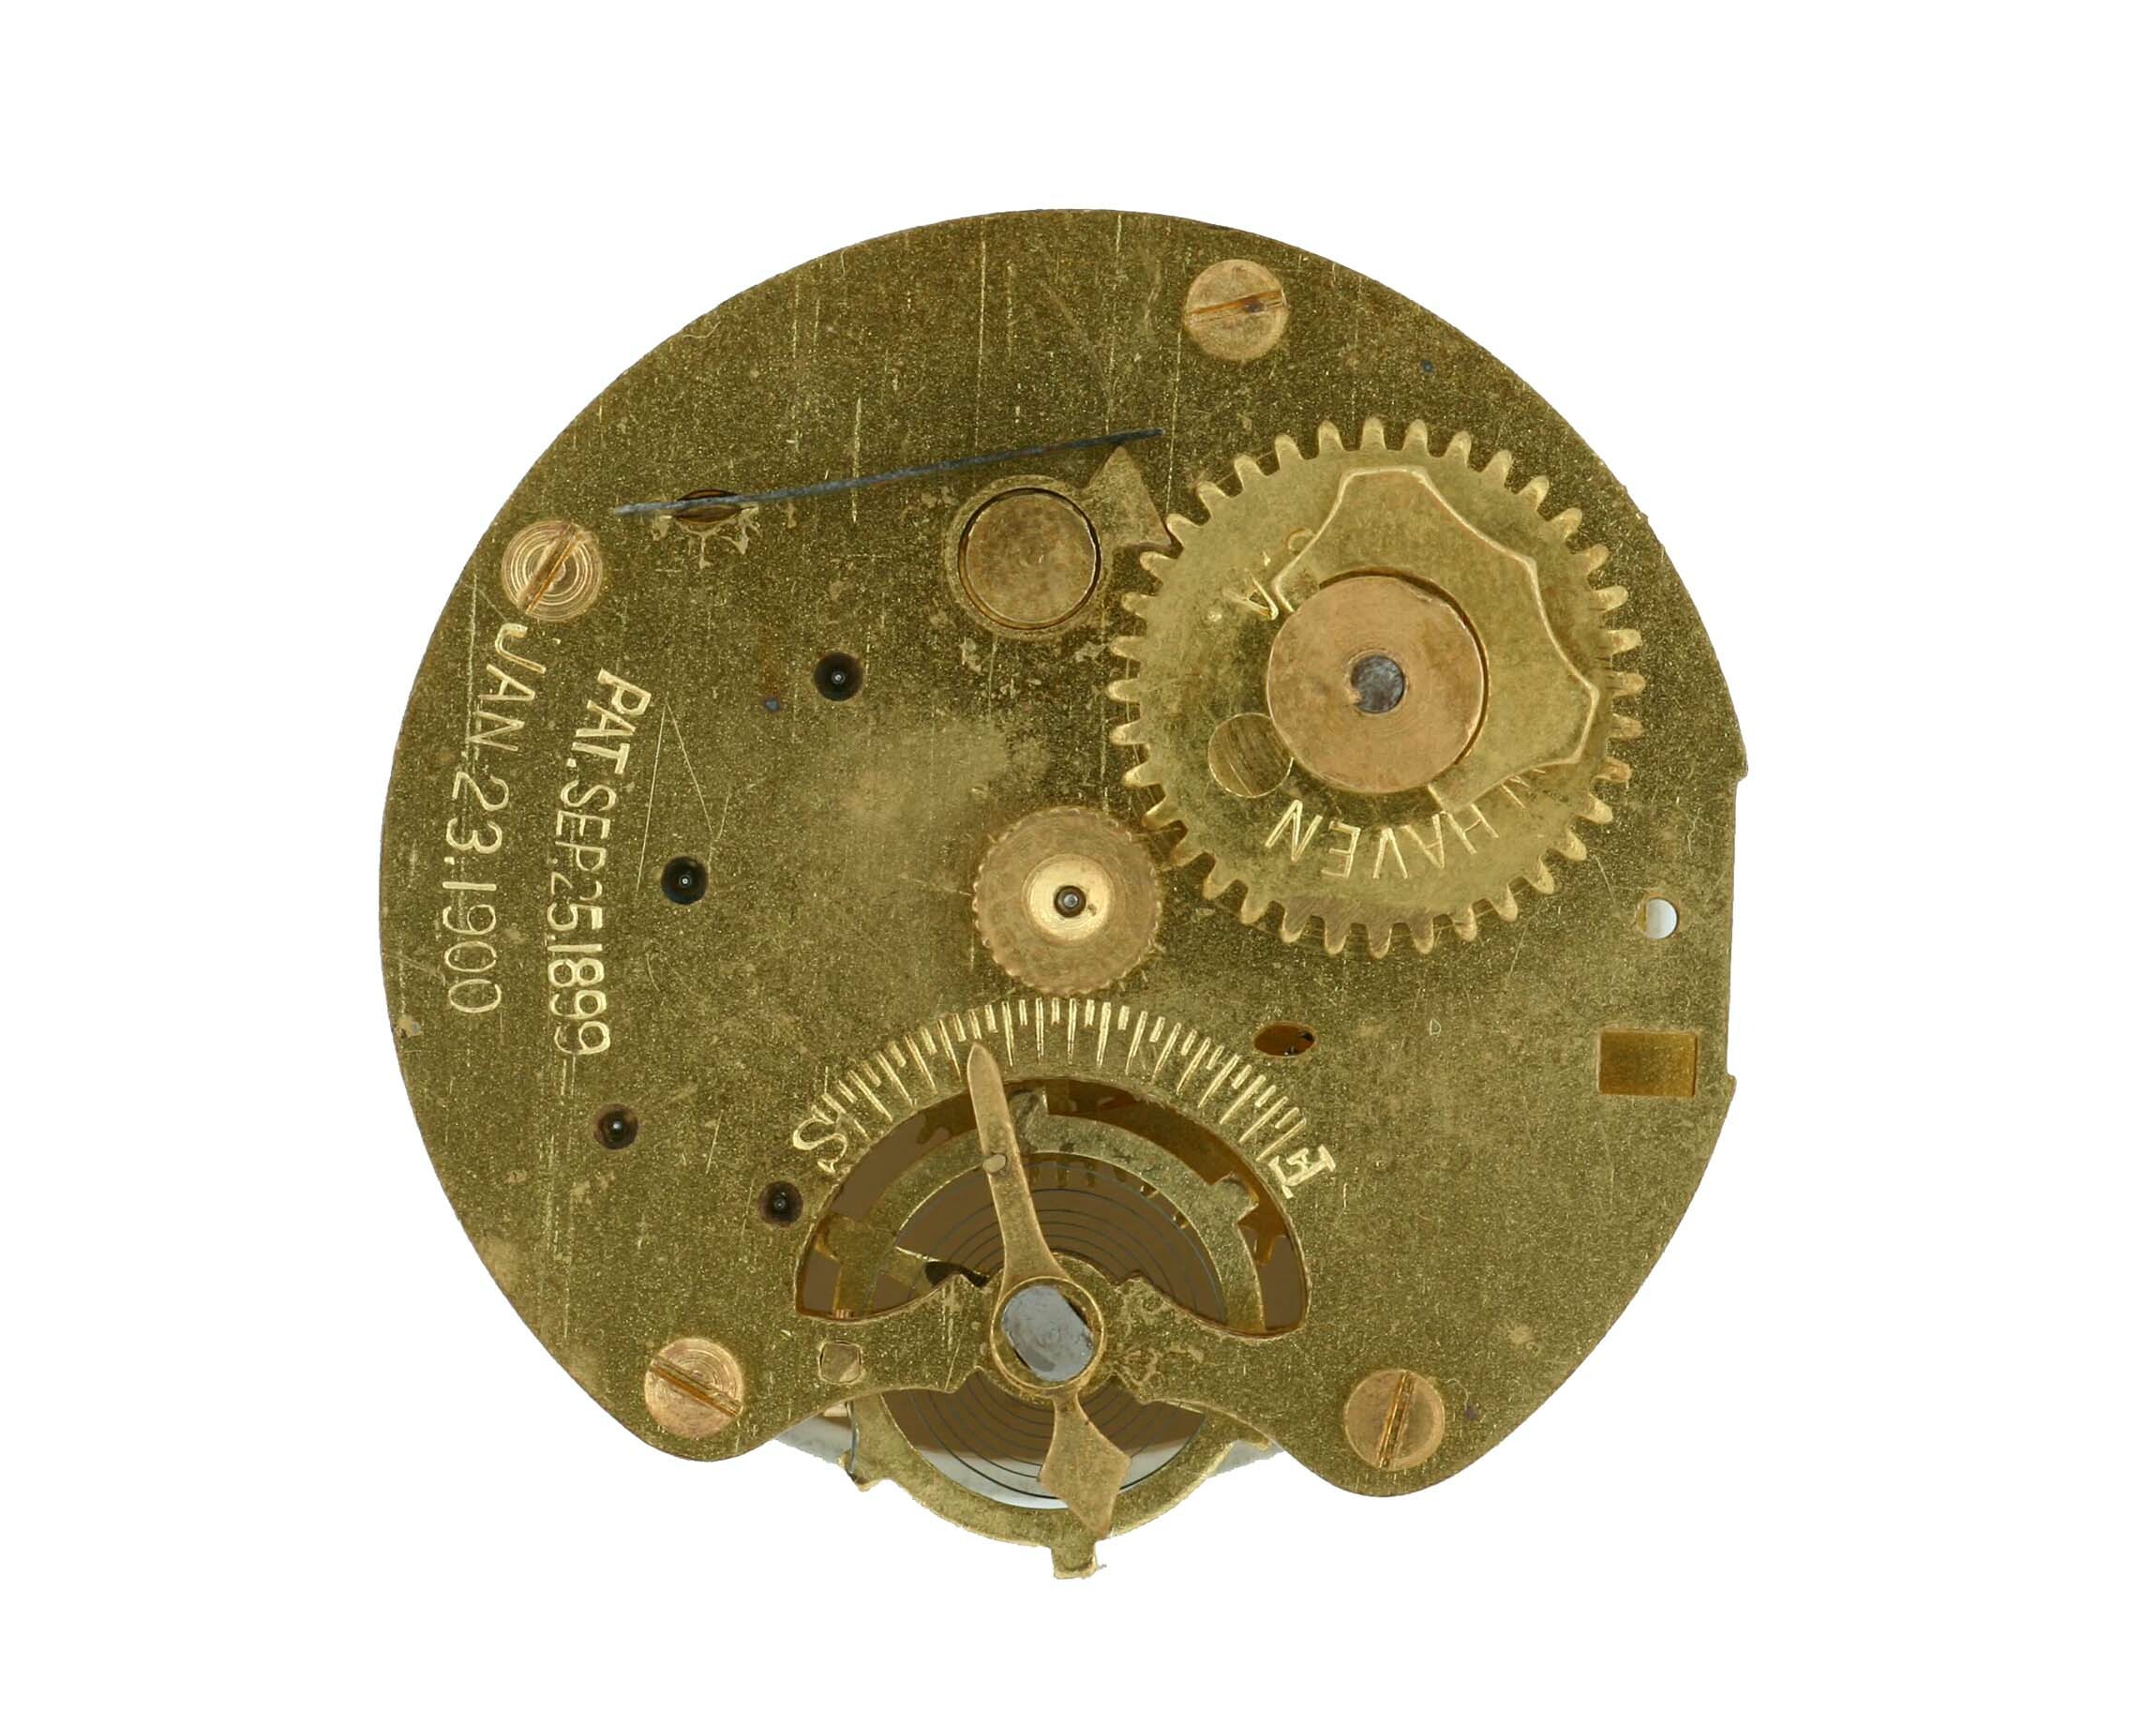 Taschenuhr New Haven, New Haven, um 1900 (Deutsches Uhrenmuseum CC BY-SA)